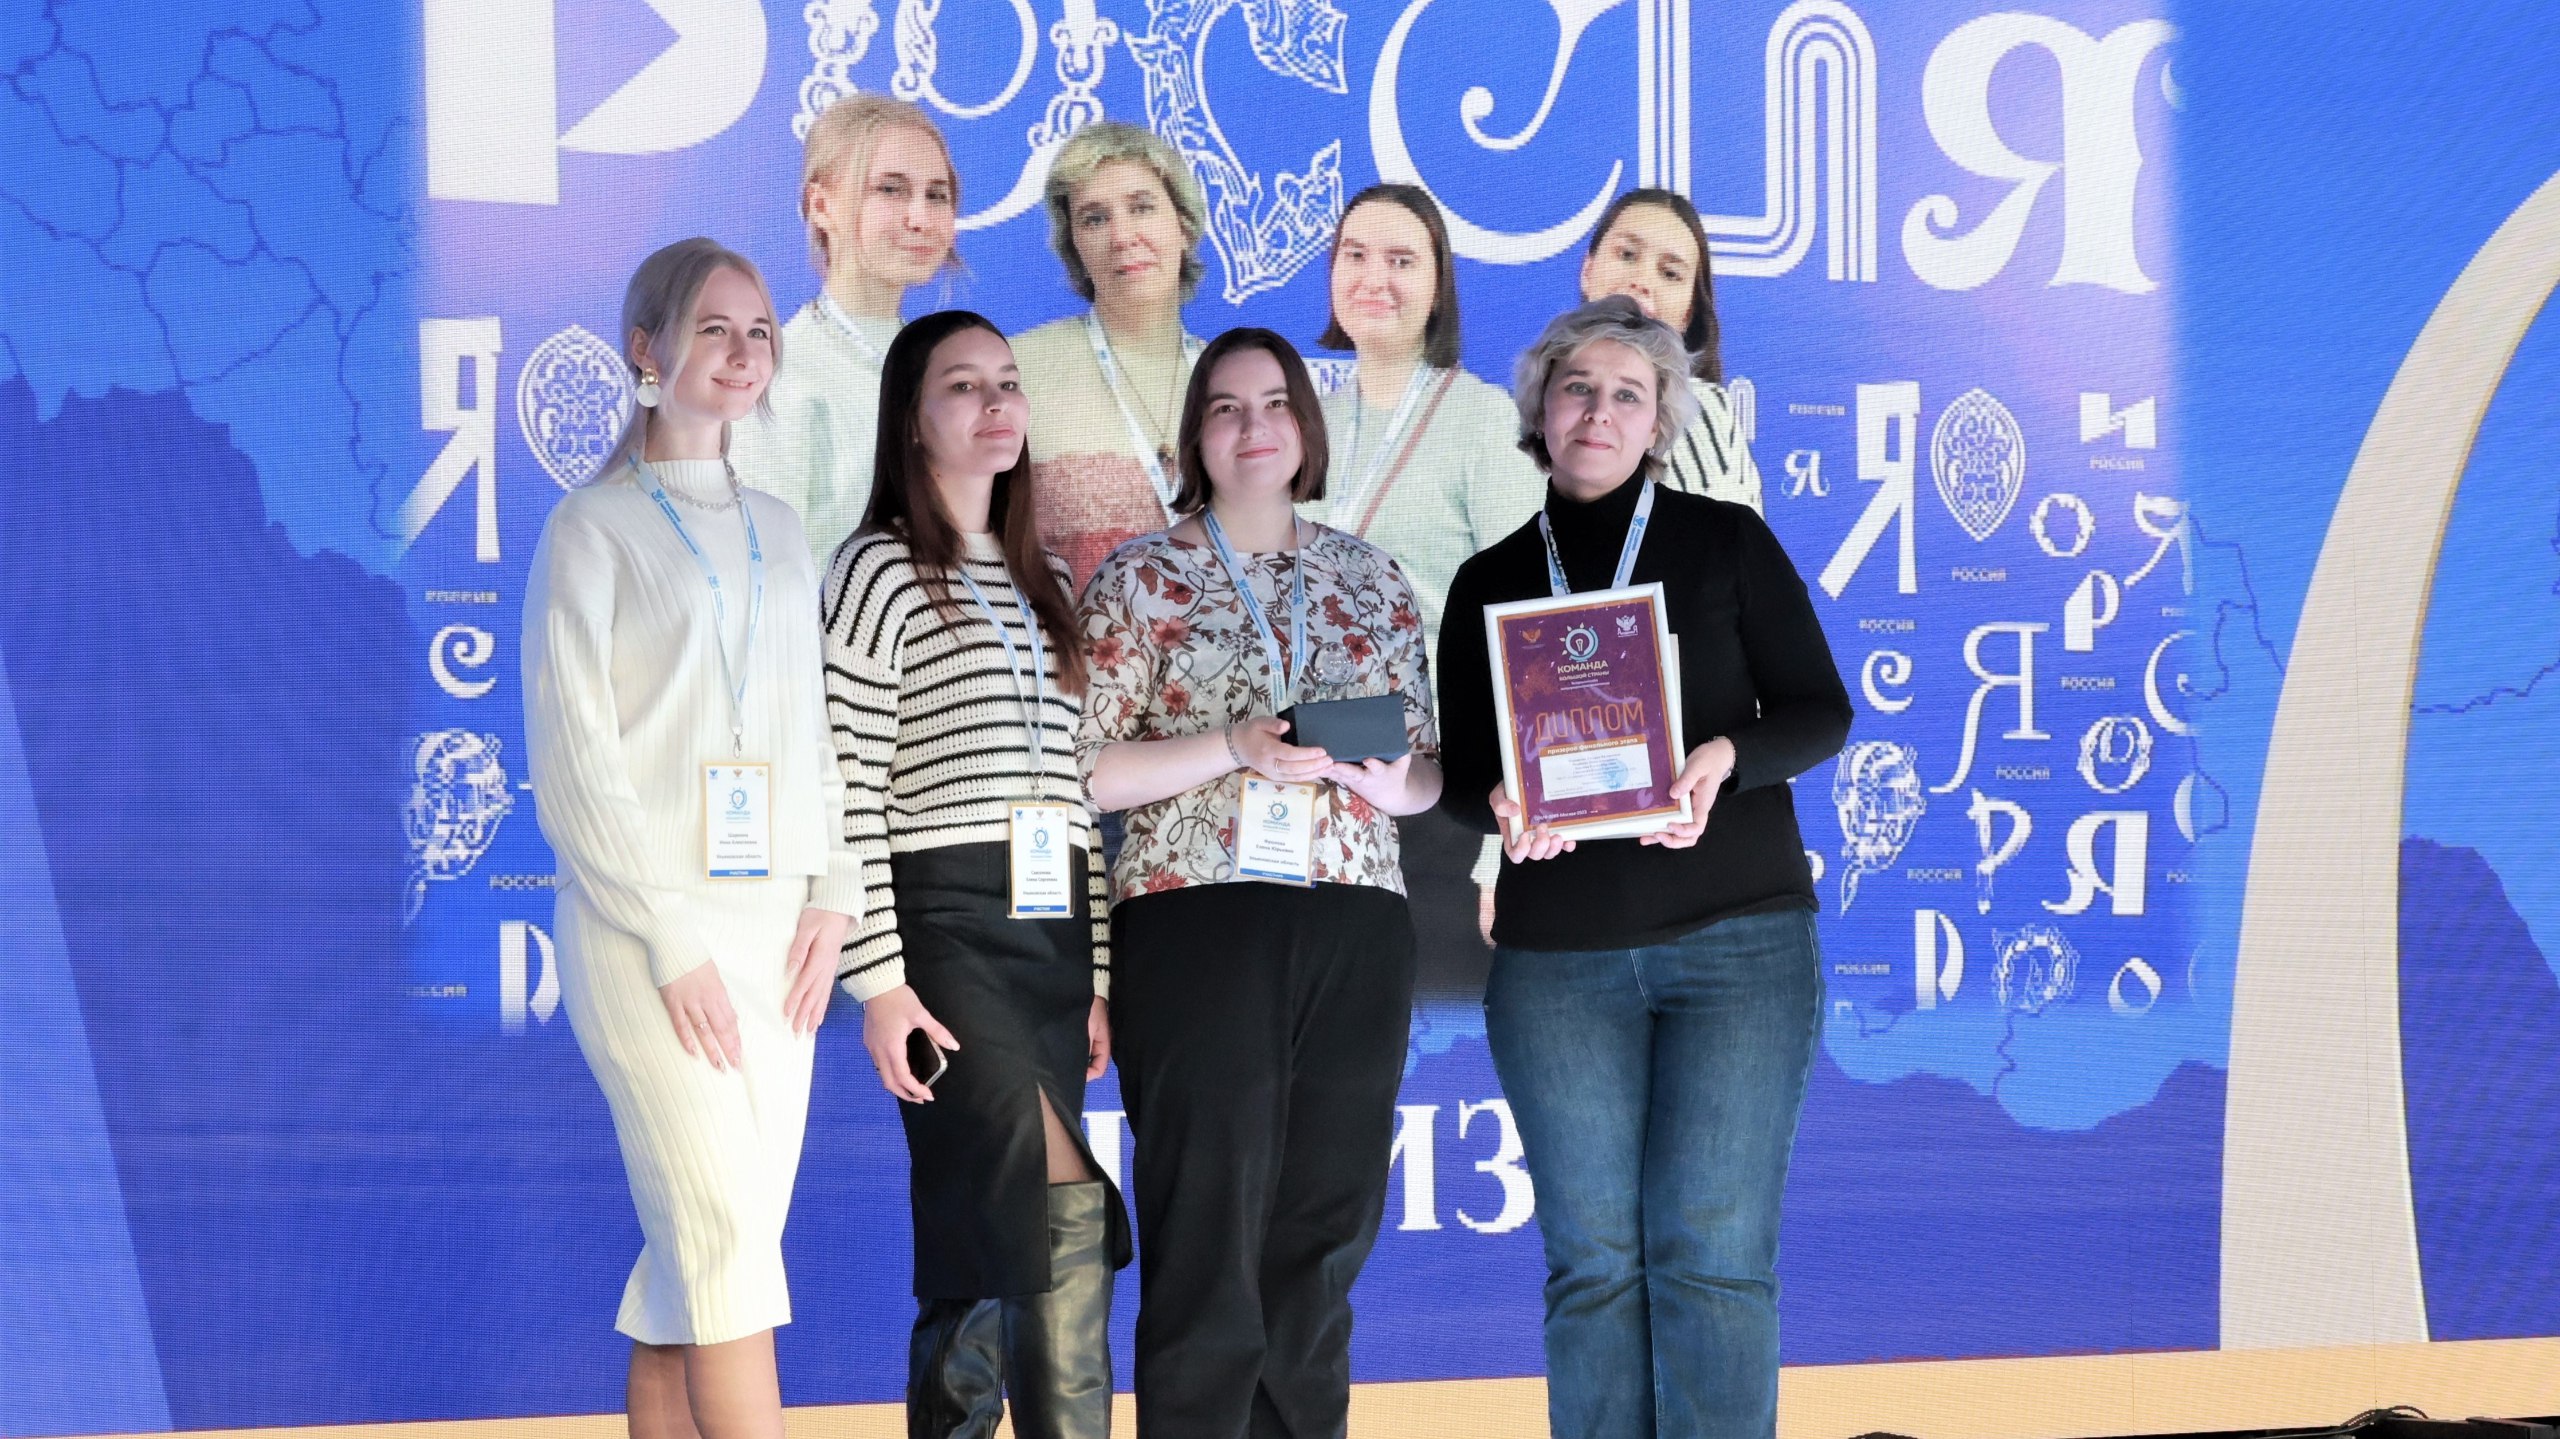 Победителями профессиональной метапредметной олимпиады для учителей «Команда большой страны» стали педагоги из Саратовской области